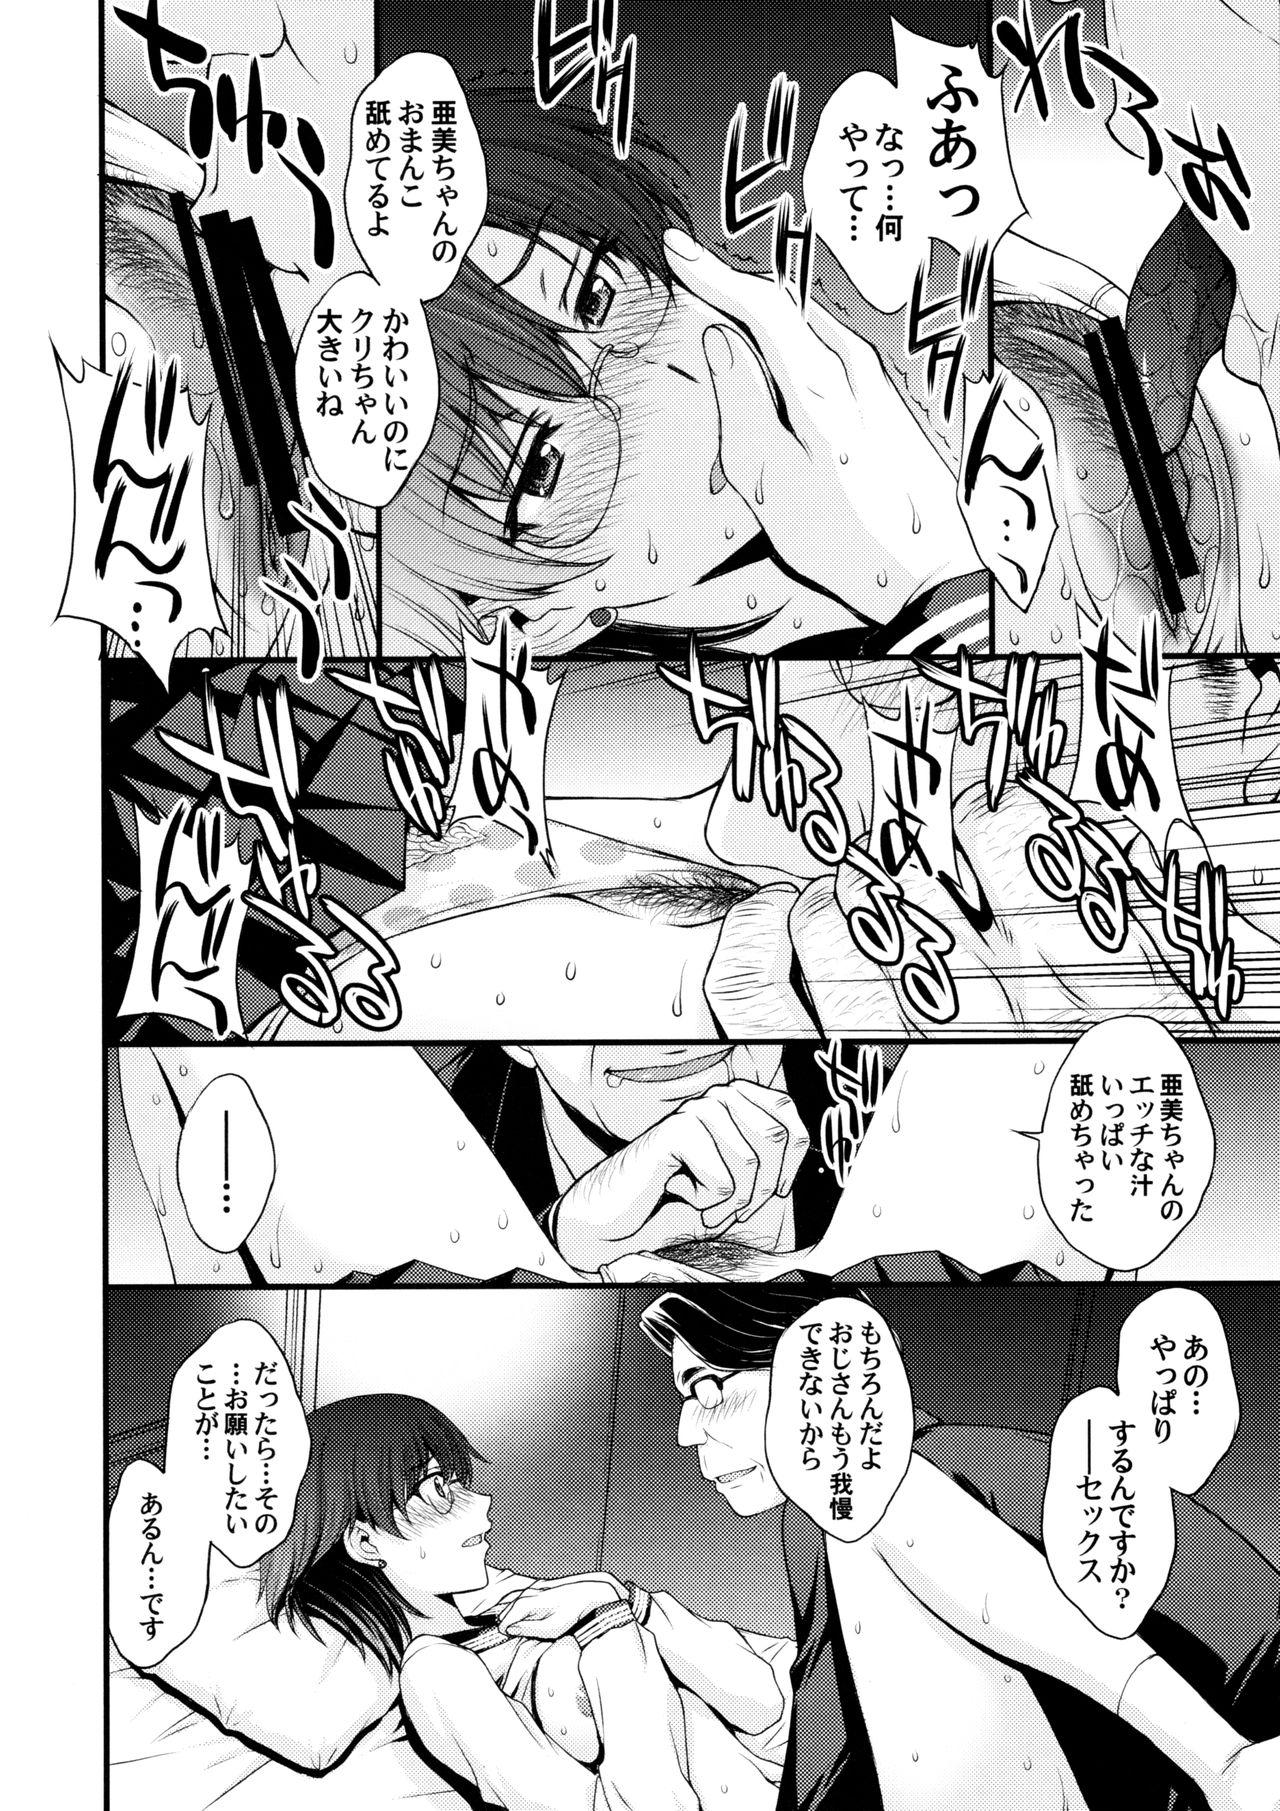 Analplay Mercury no shojo soushitsu de ippatsu nu kitai - Sailor moon Teenfuns - Page 5